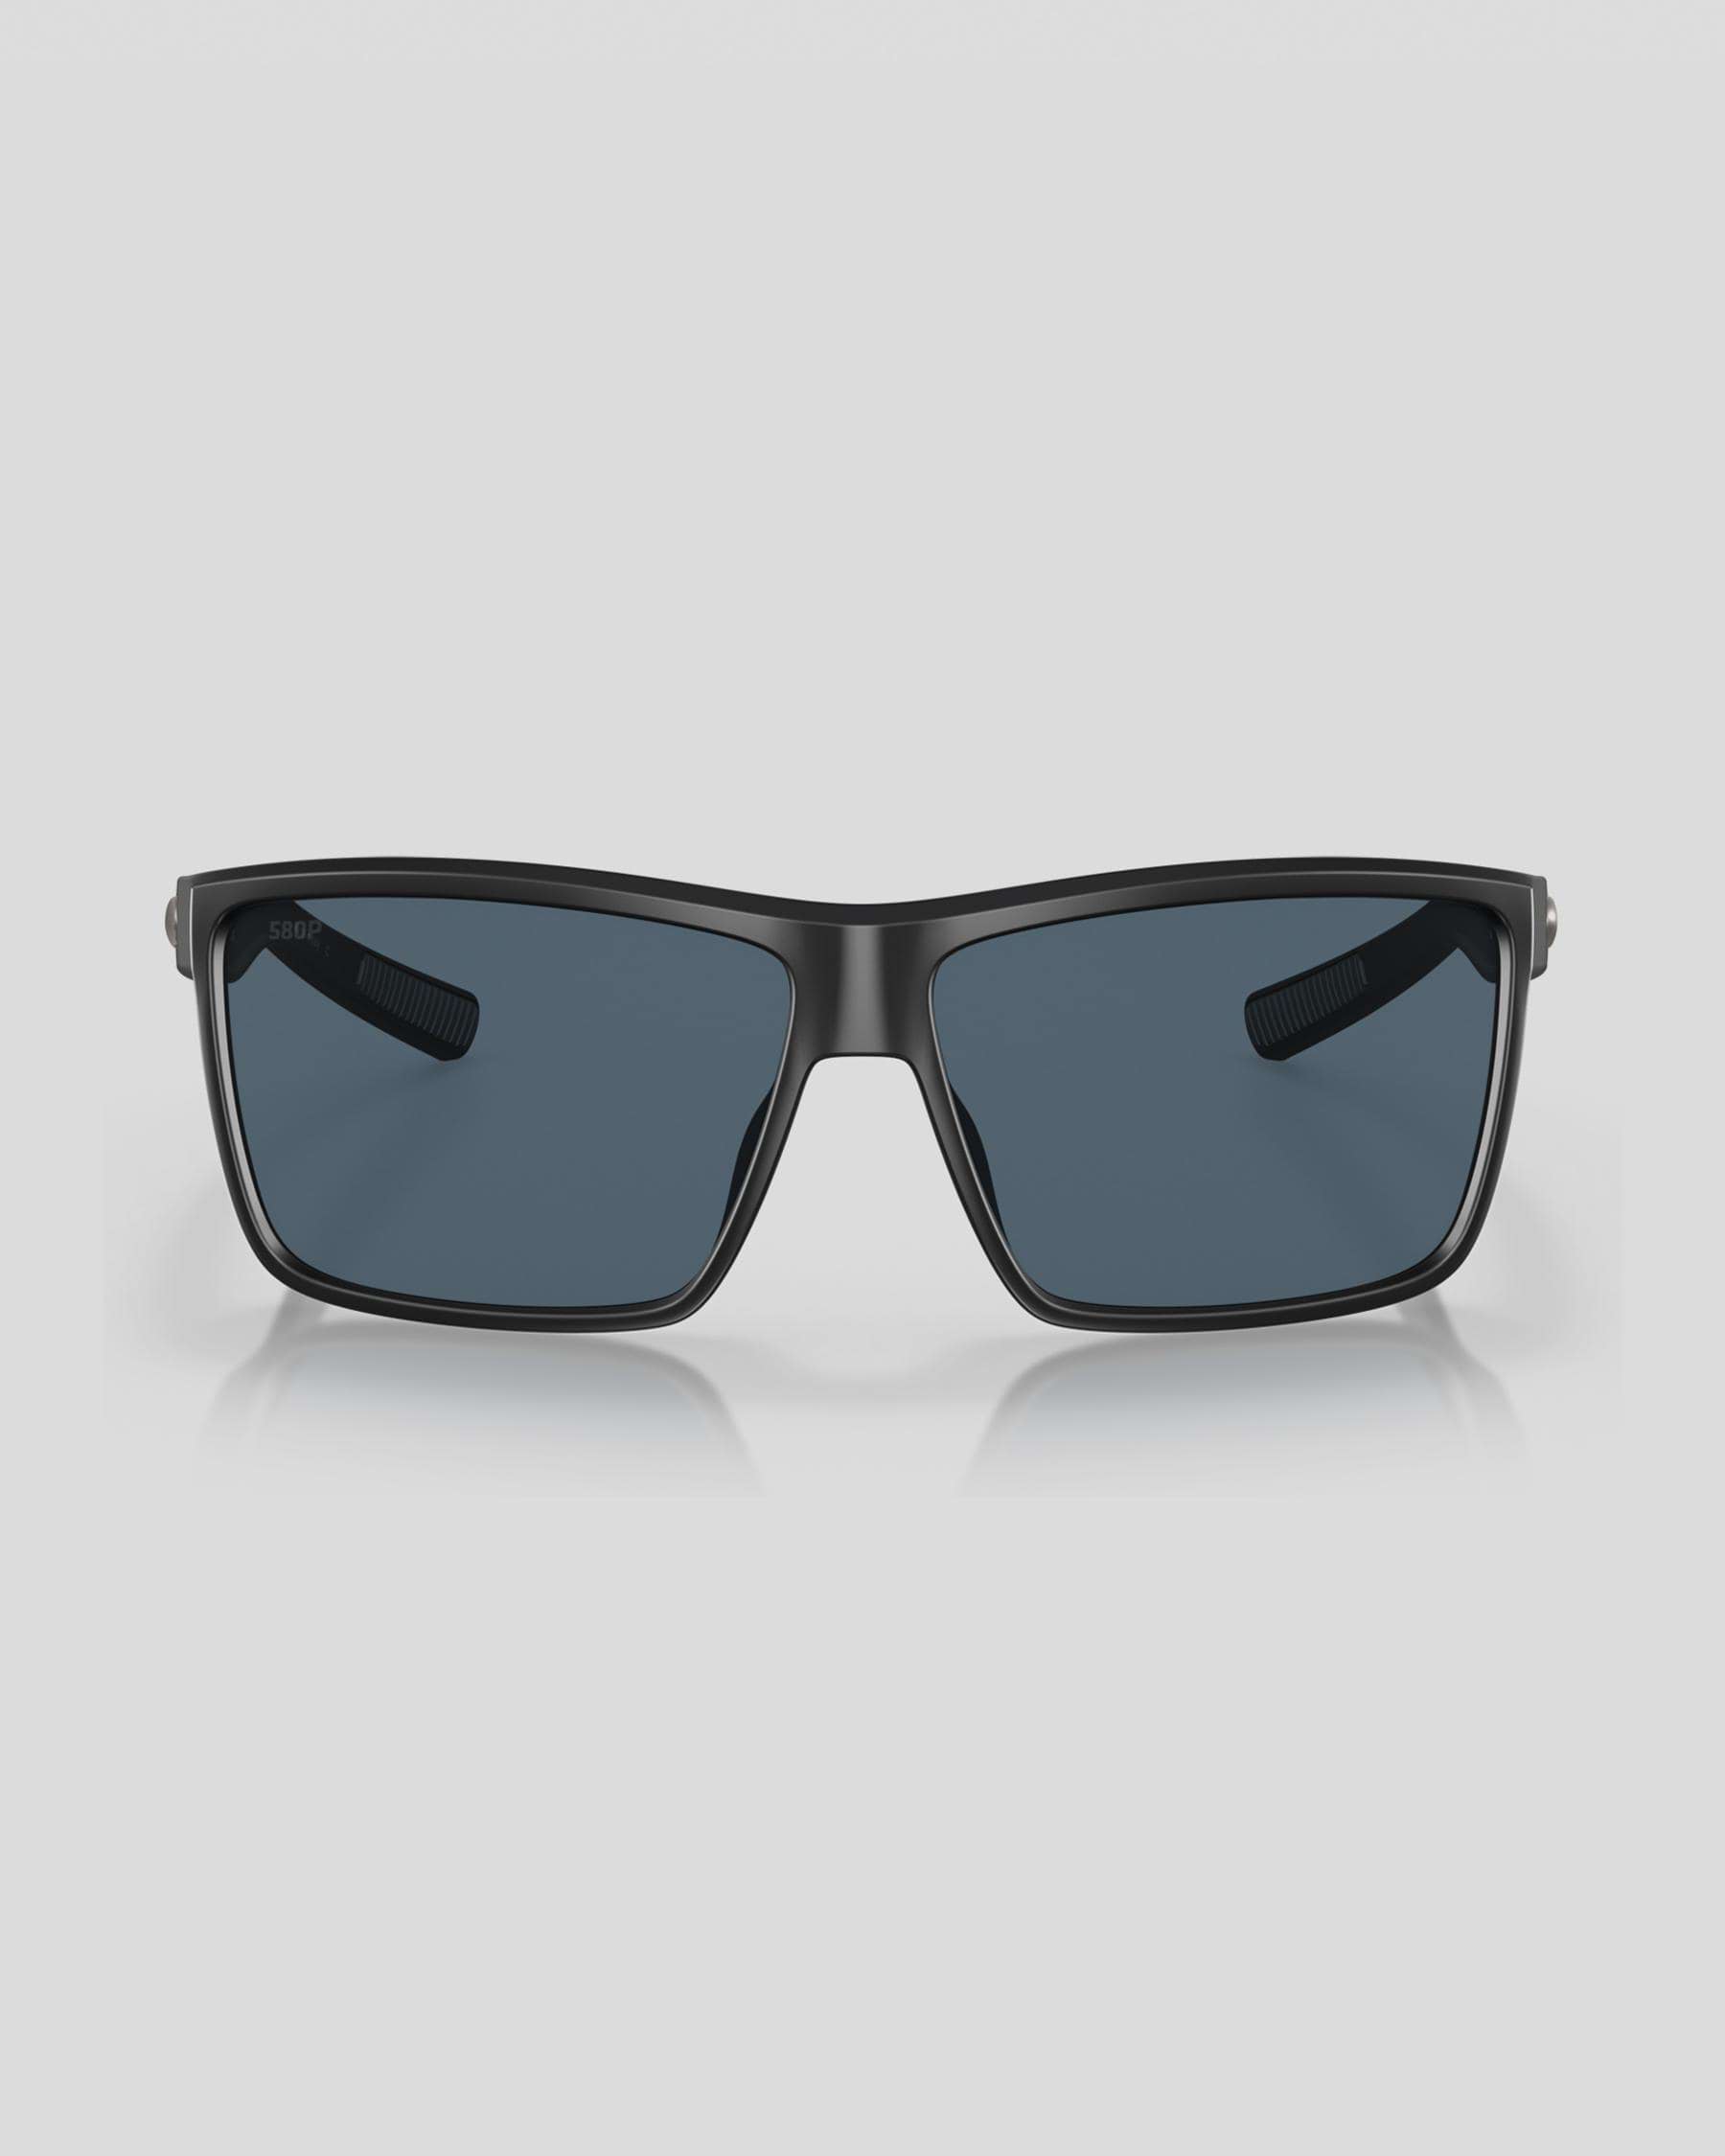 Costa Rinconcito 11 Polarized Sunglasses In Matte Black / Gray Mirror ...